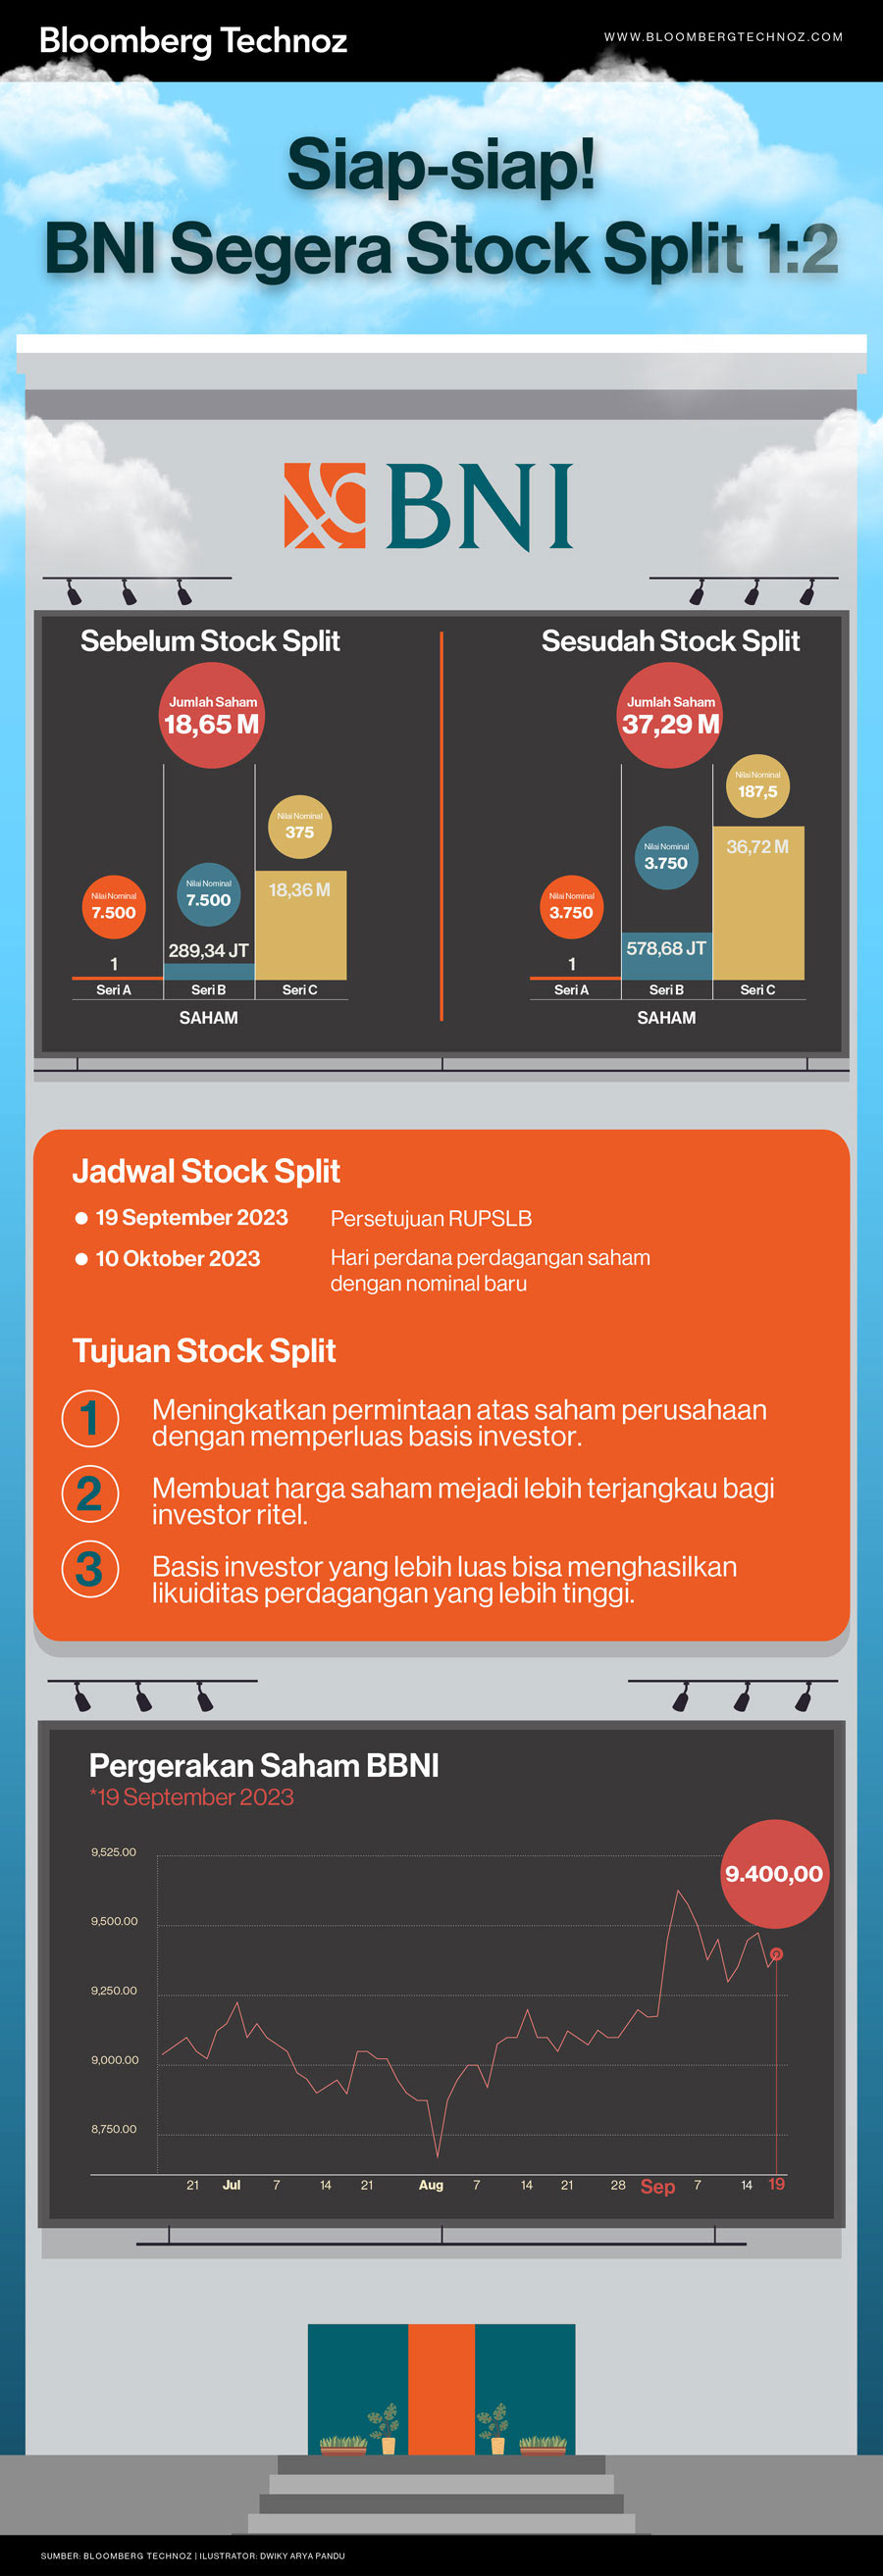 Siap-siap! BNI Segera Stock Split 1:2 (Infografis/Bloomberg Technoz)